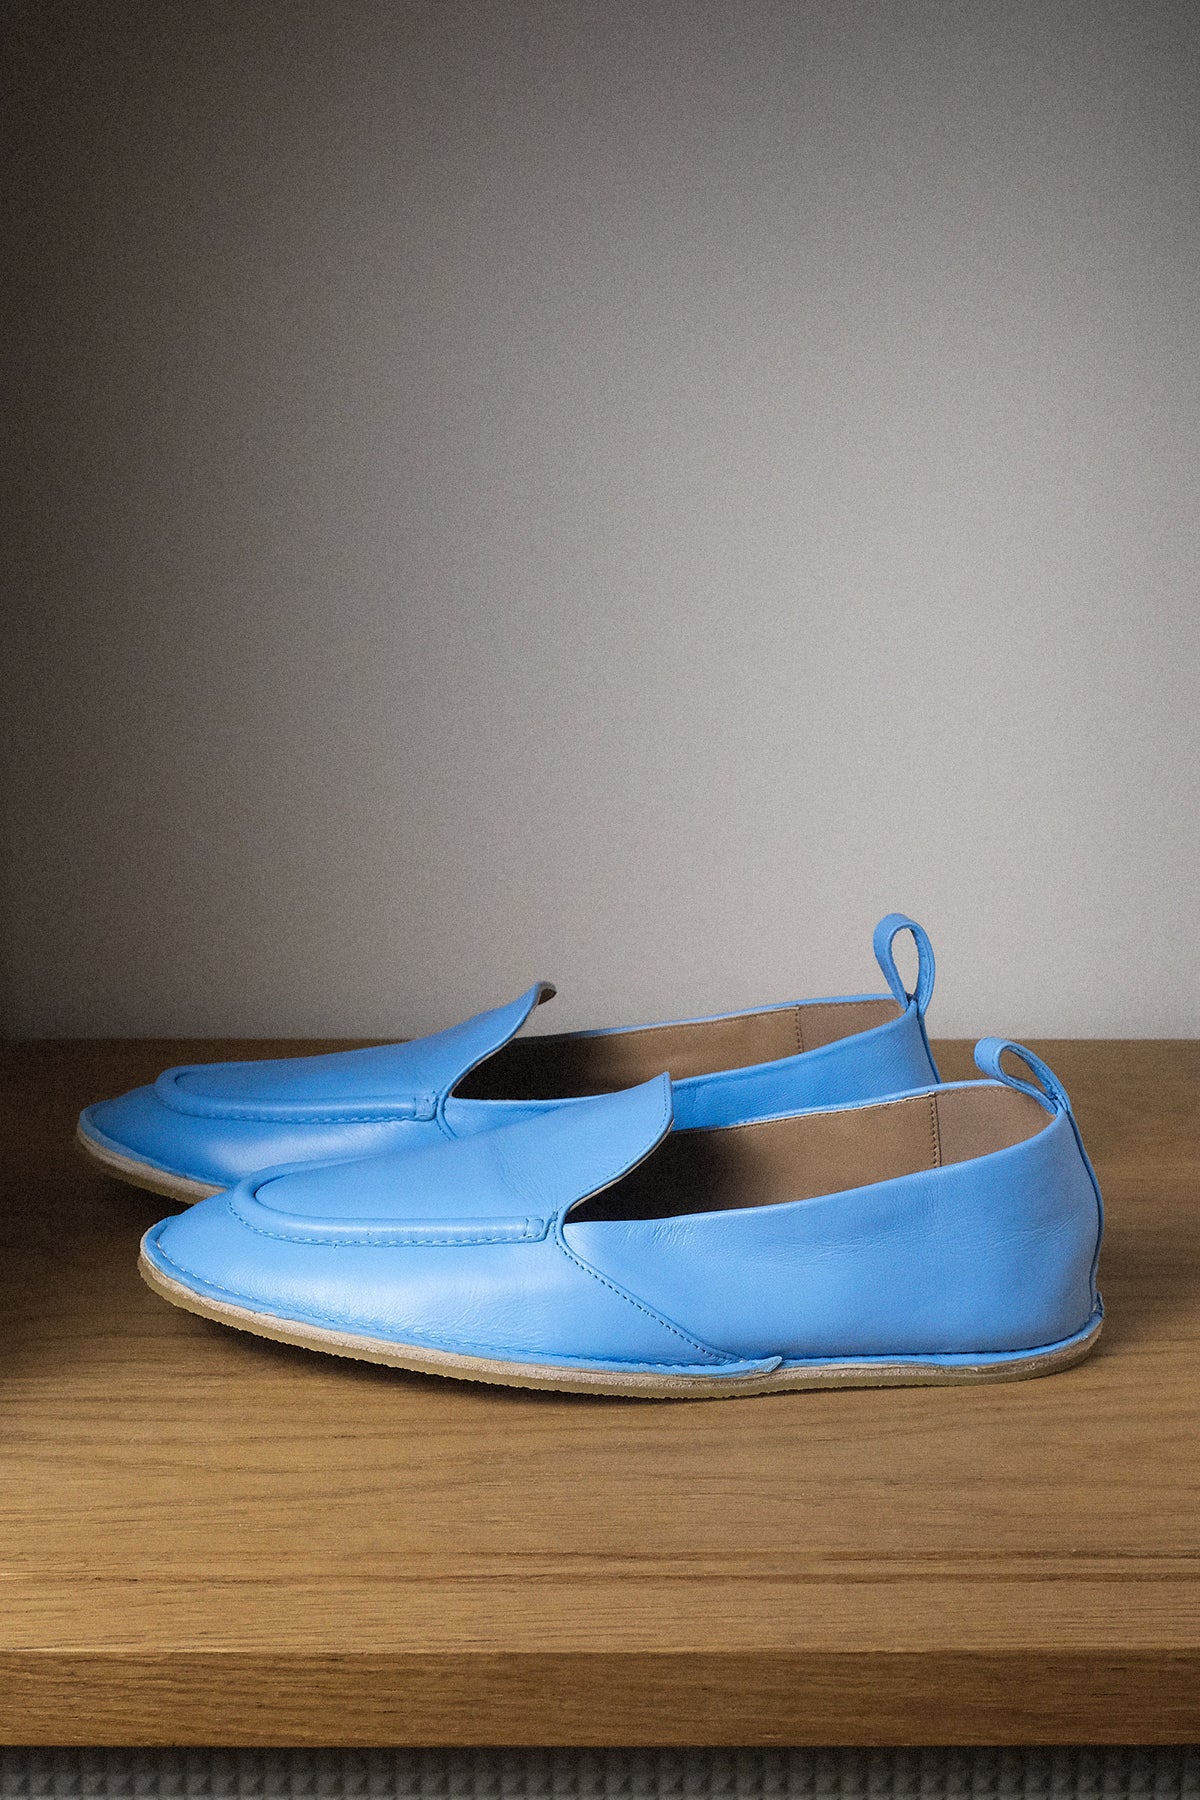 Dries van Noten — Loafer / Light Blue